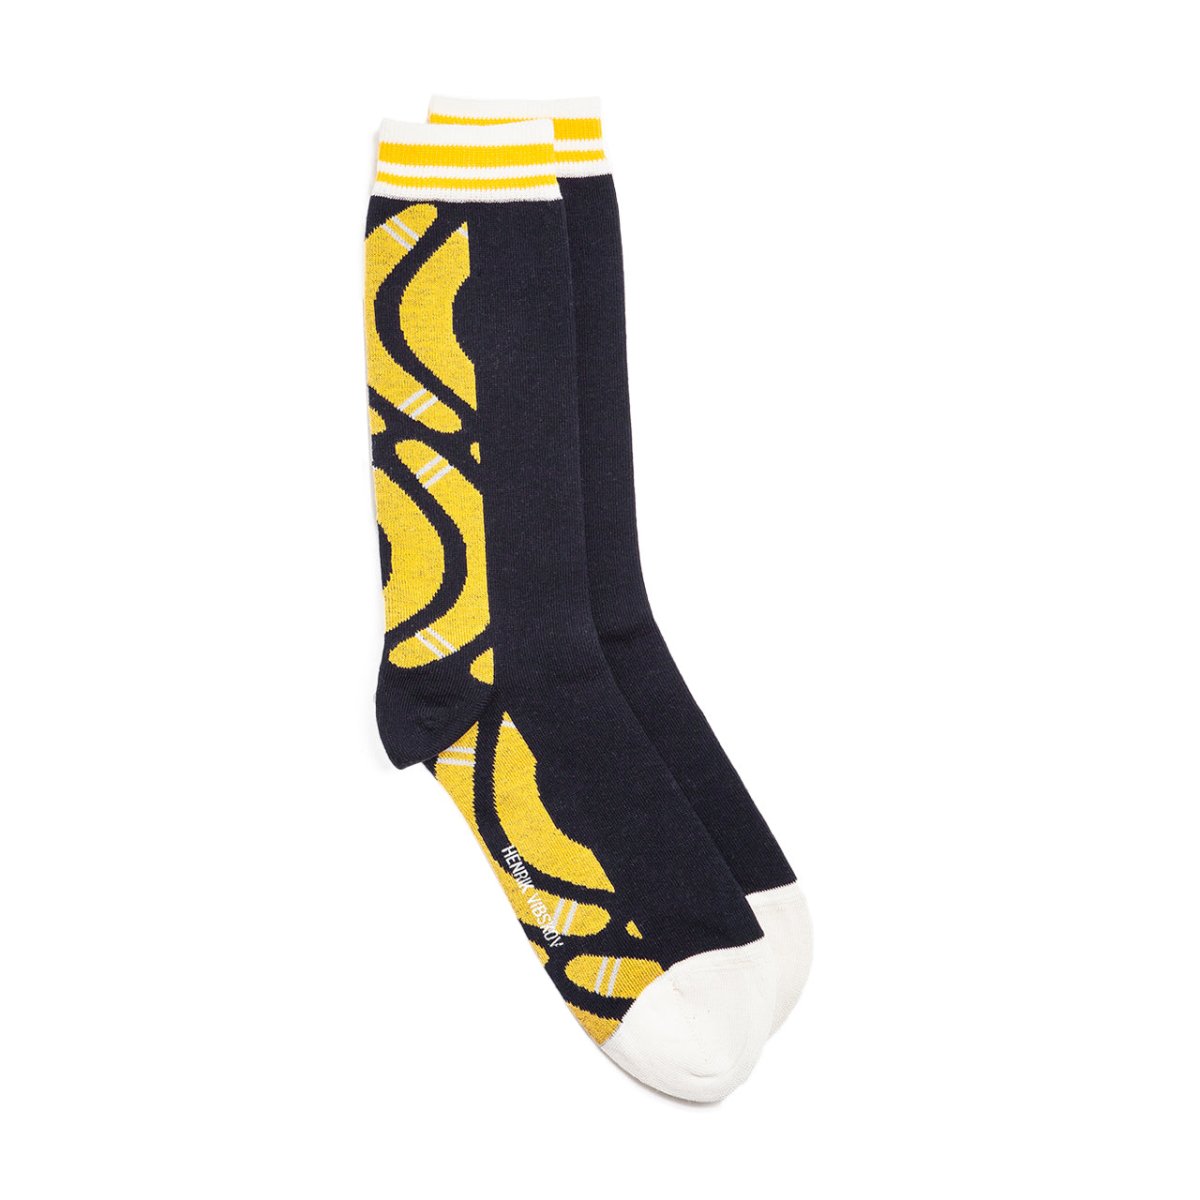 Henrik Vibskov Boomerang Back Socks (Schwarz / Gelb)  - Allike Store